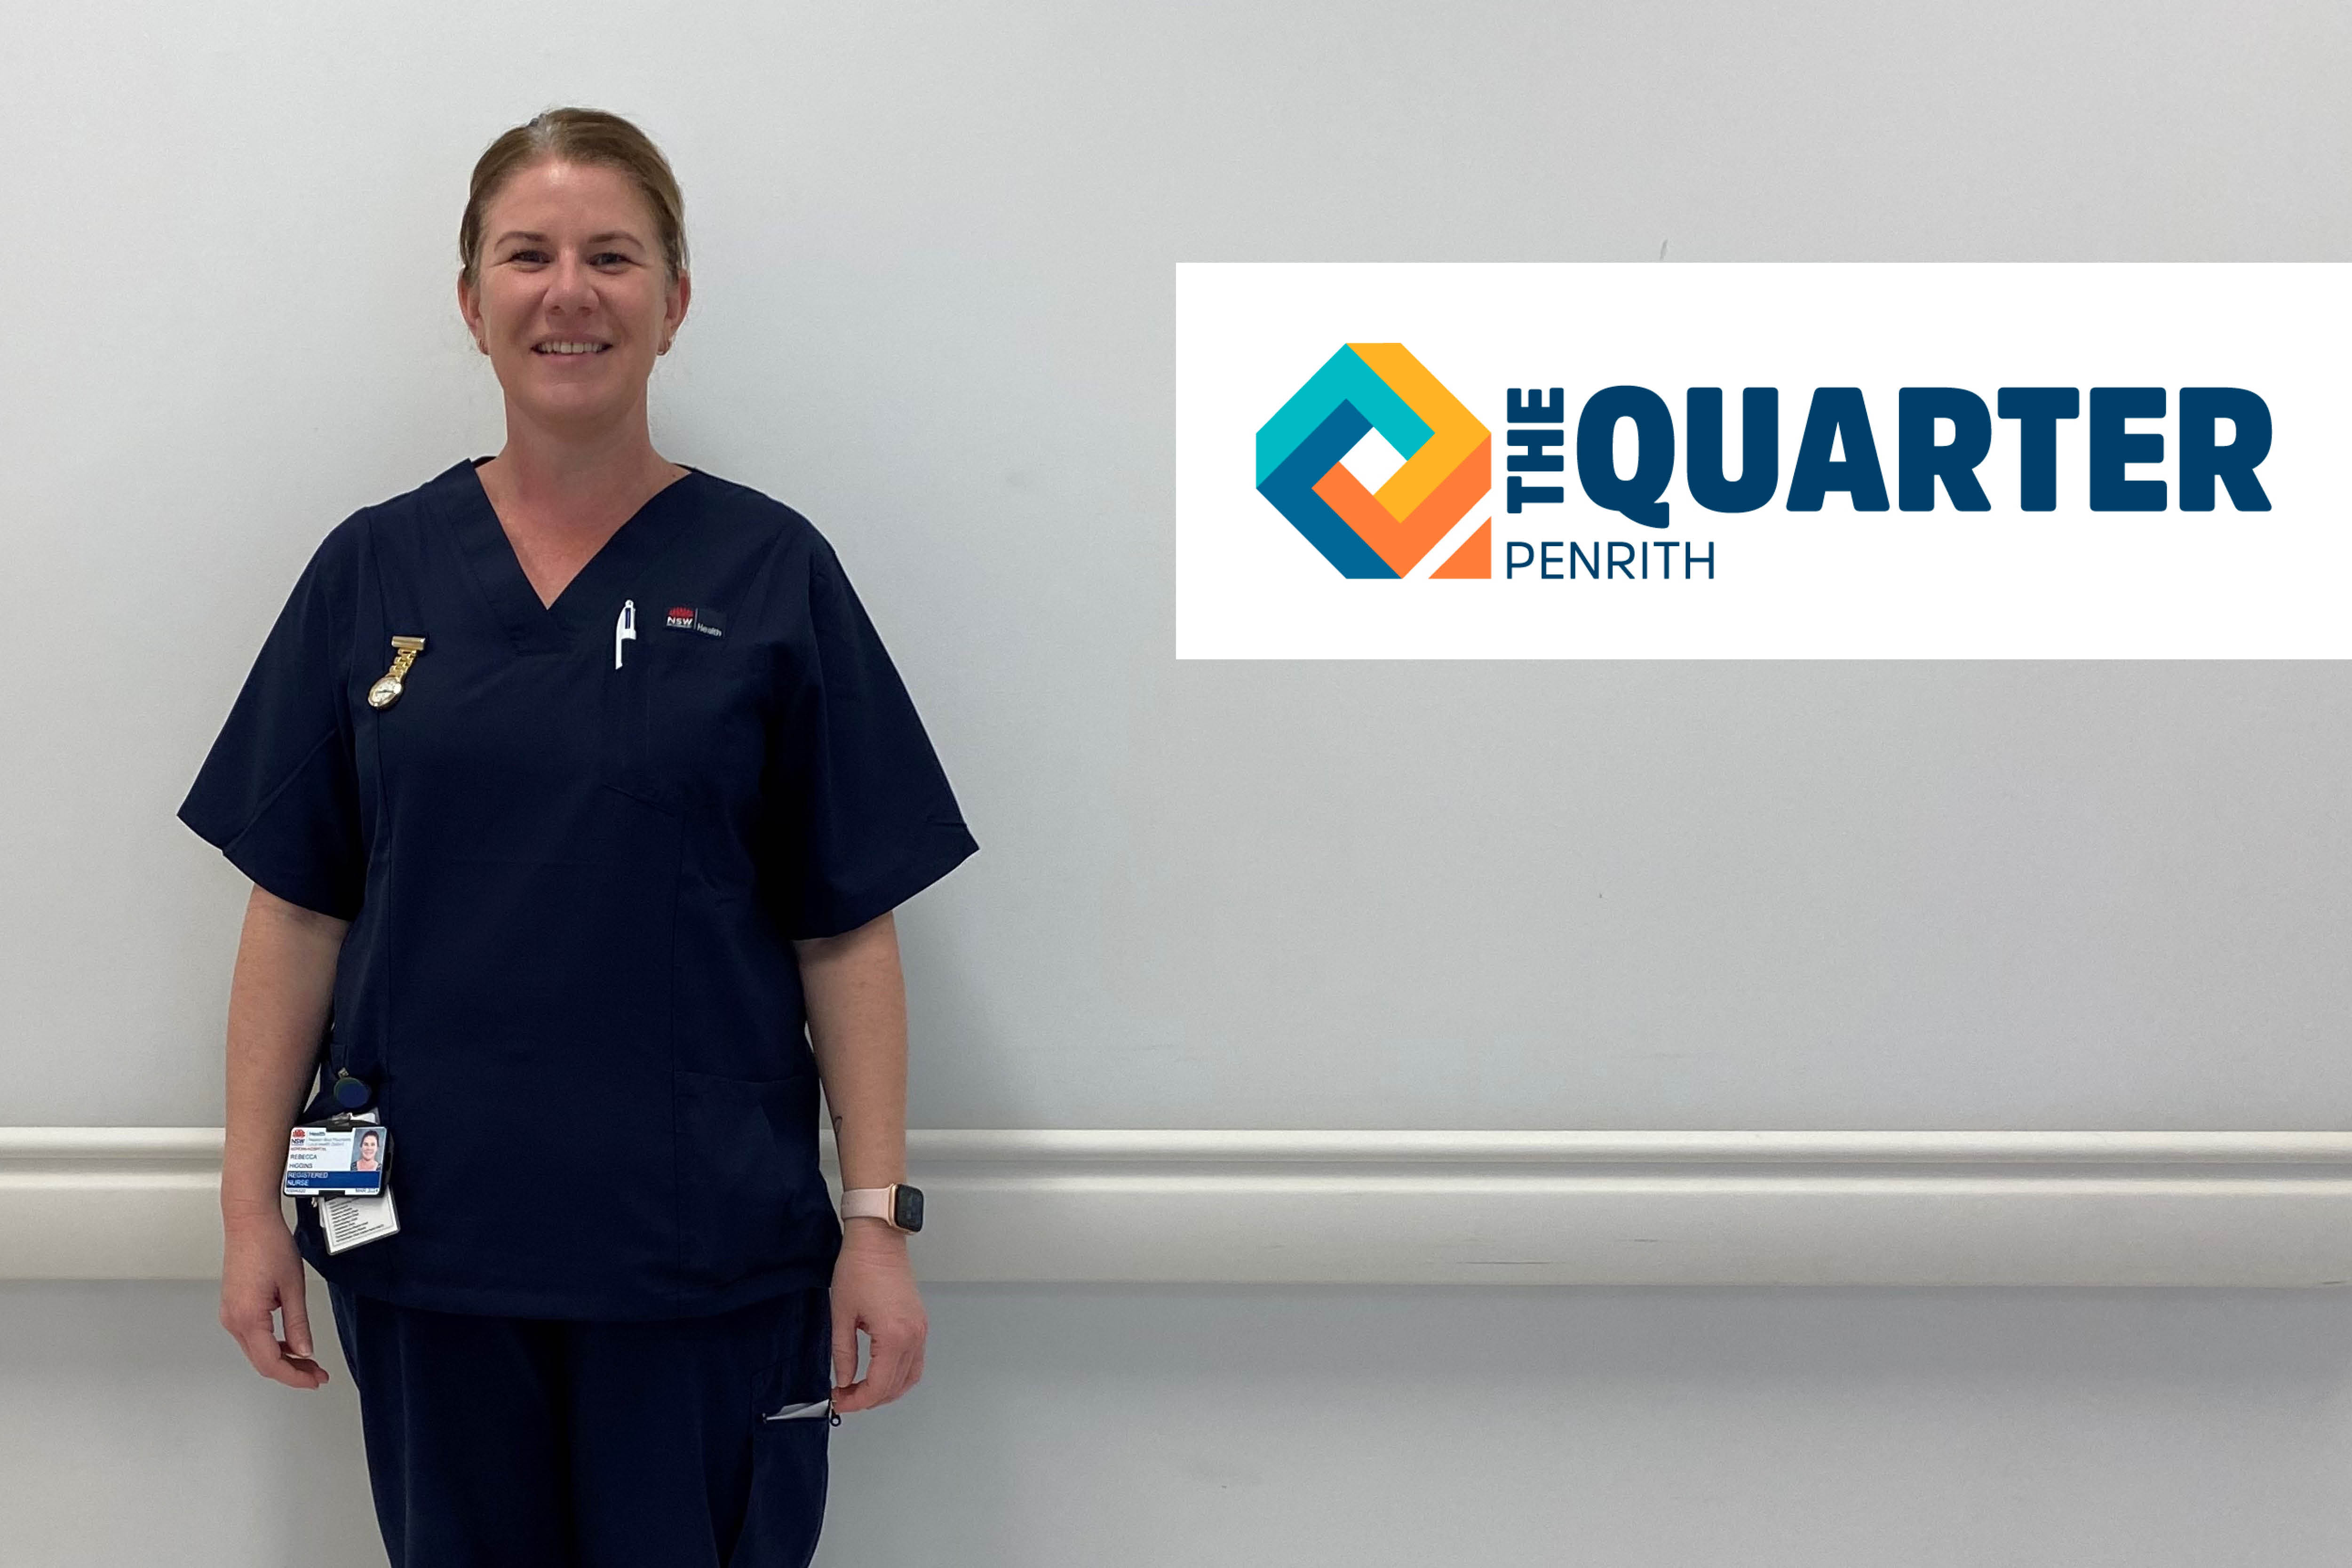 female nurse next to digital logo The Quarter Penrith